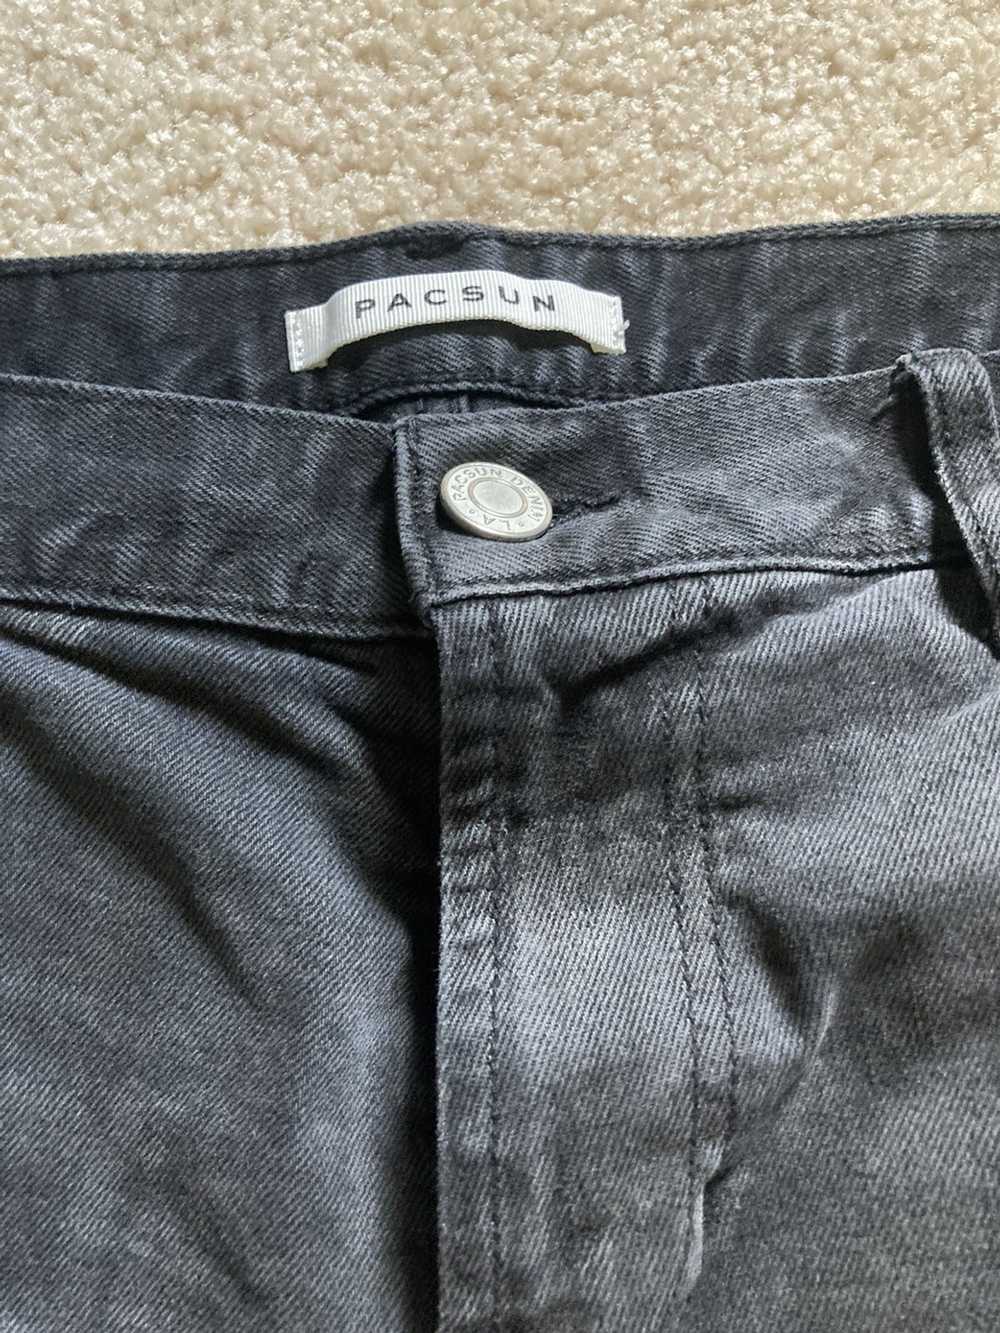 Pacsun × Vintage Black pacsun slim taper jeans - image 5